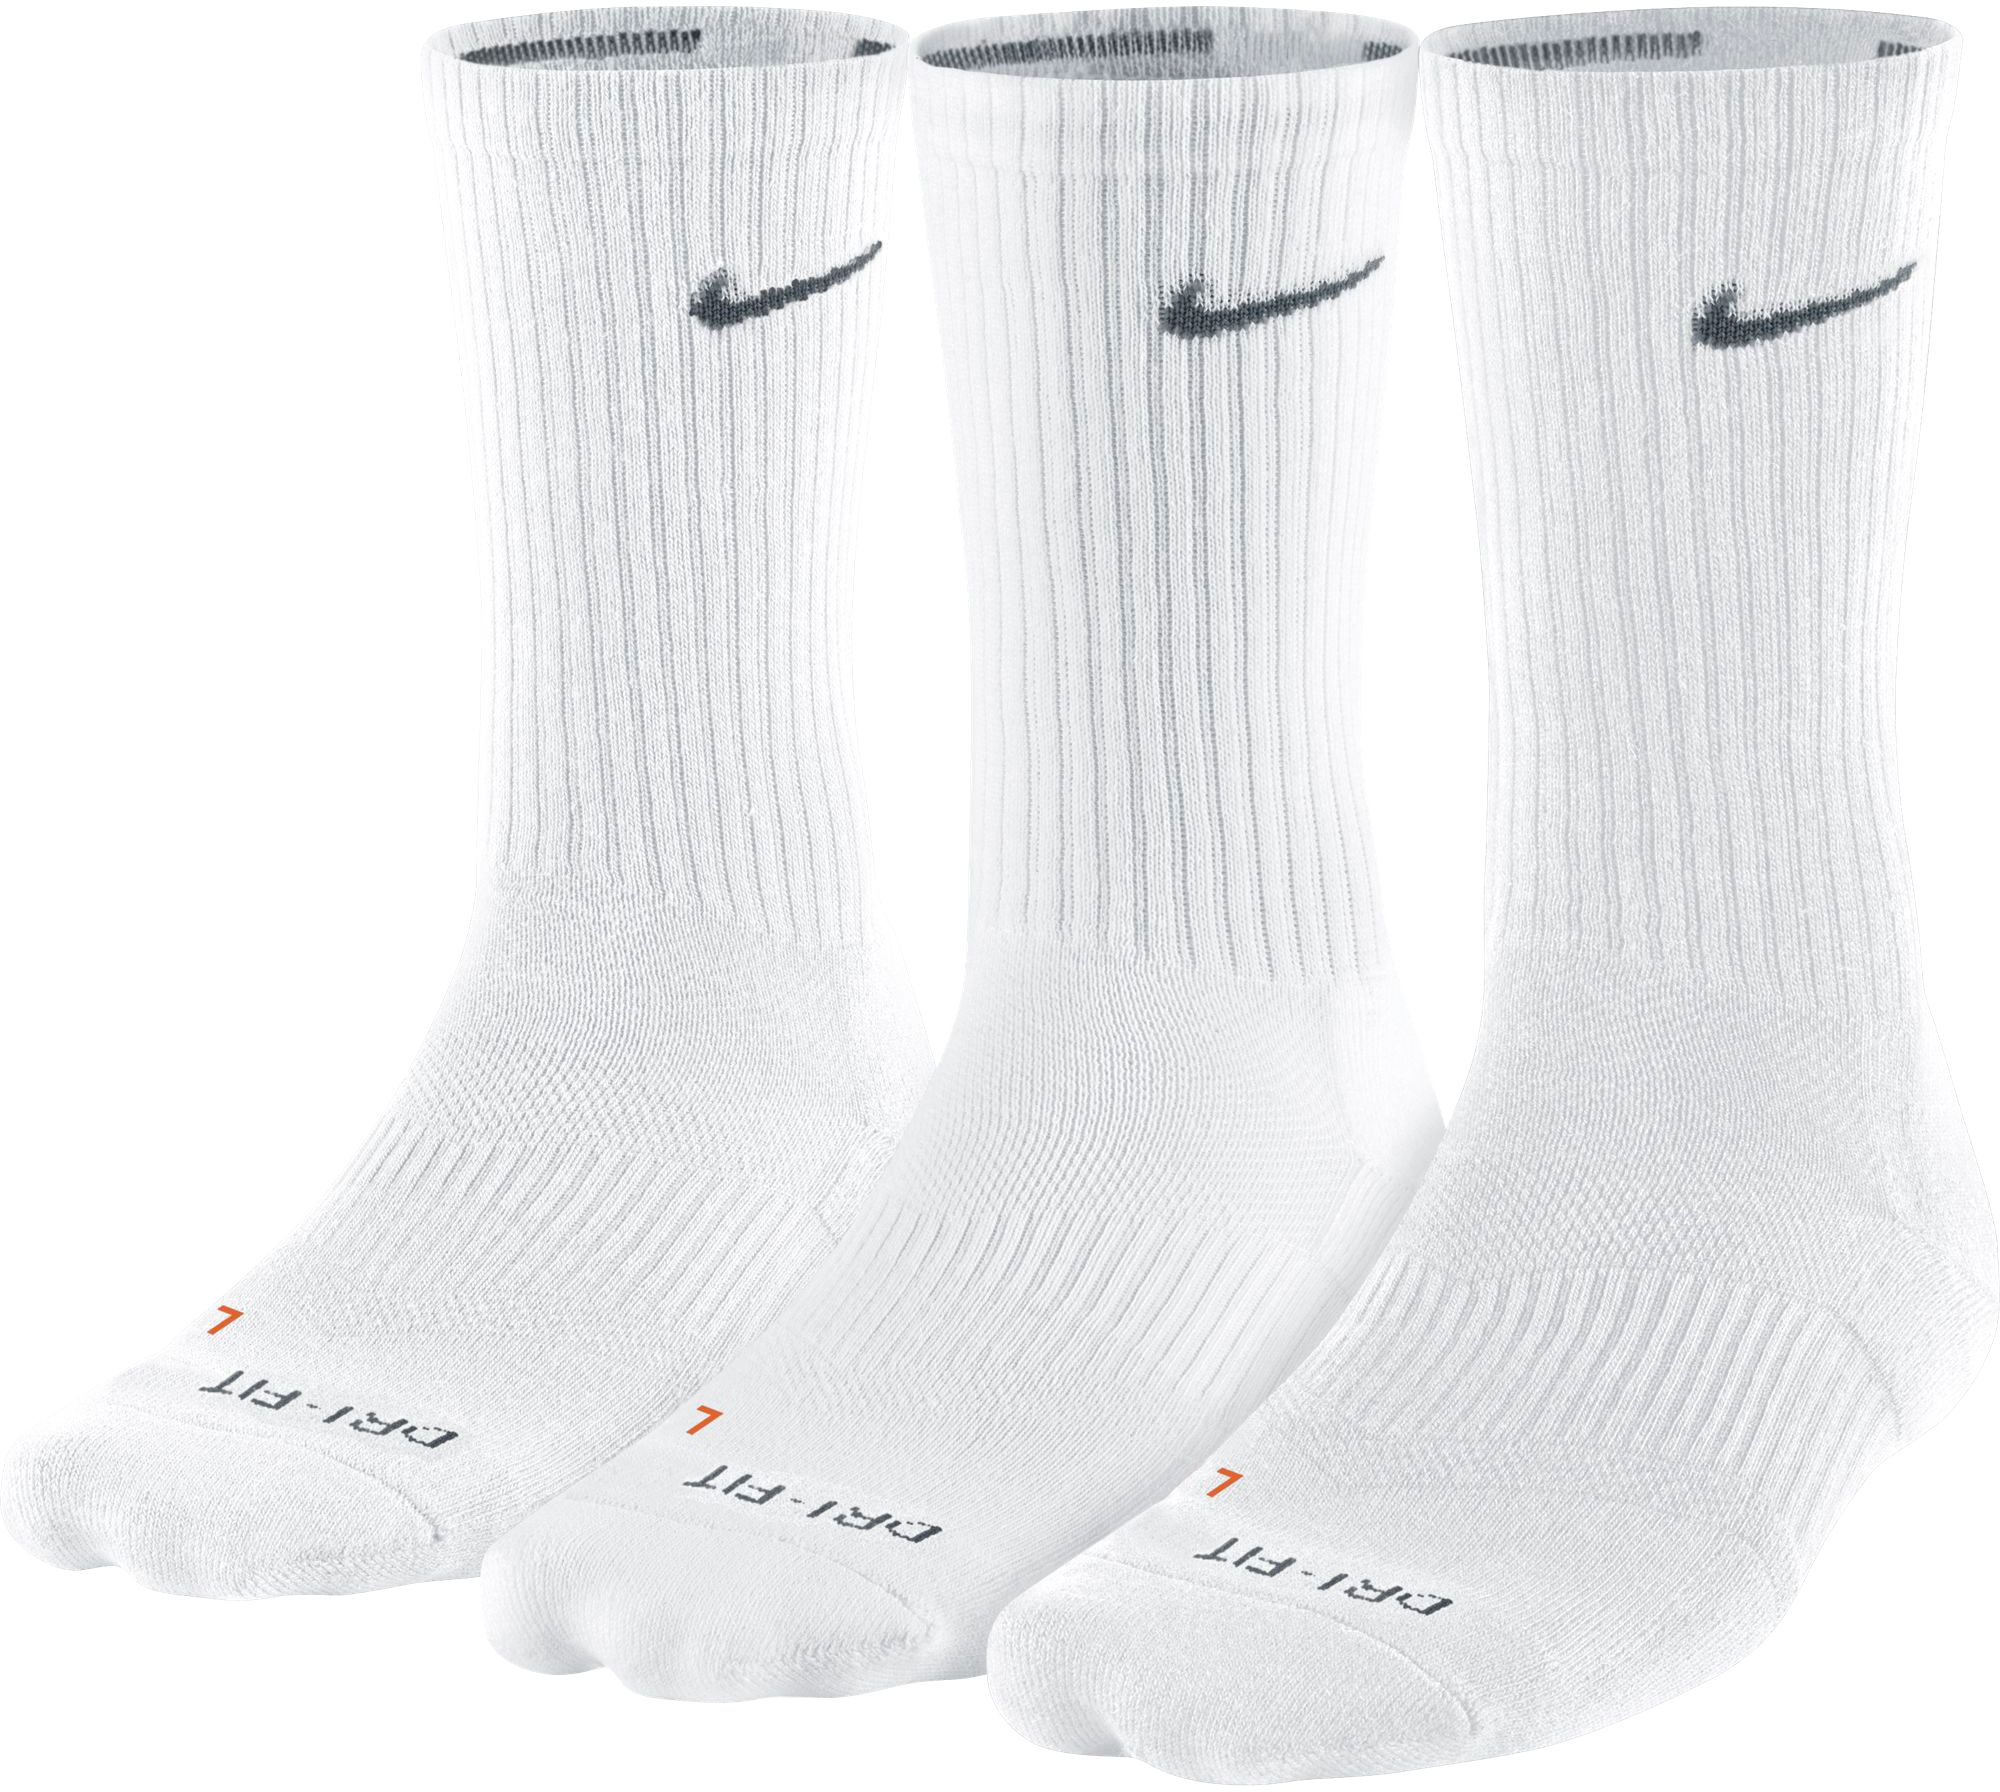 nike men's dri fit socks white